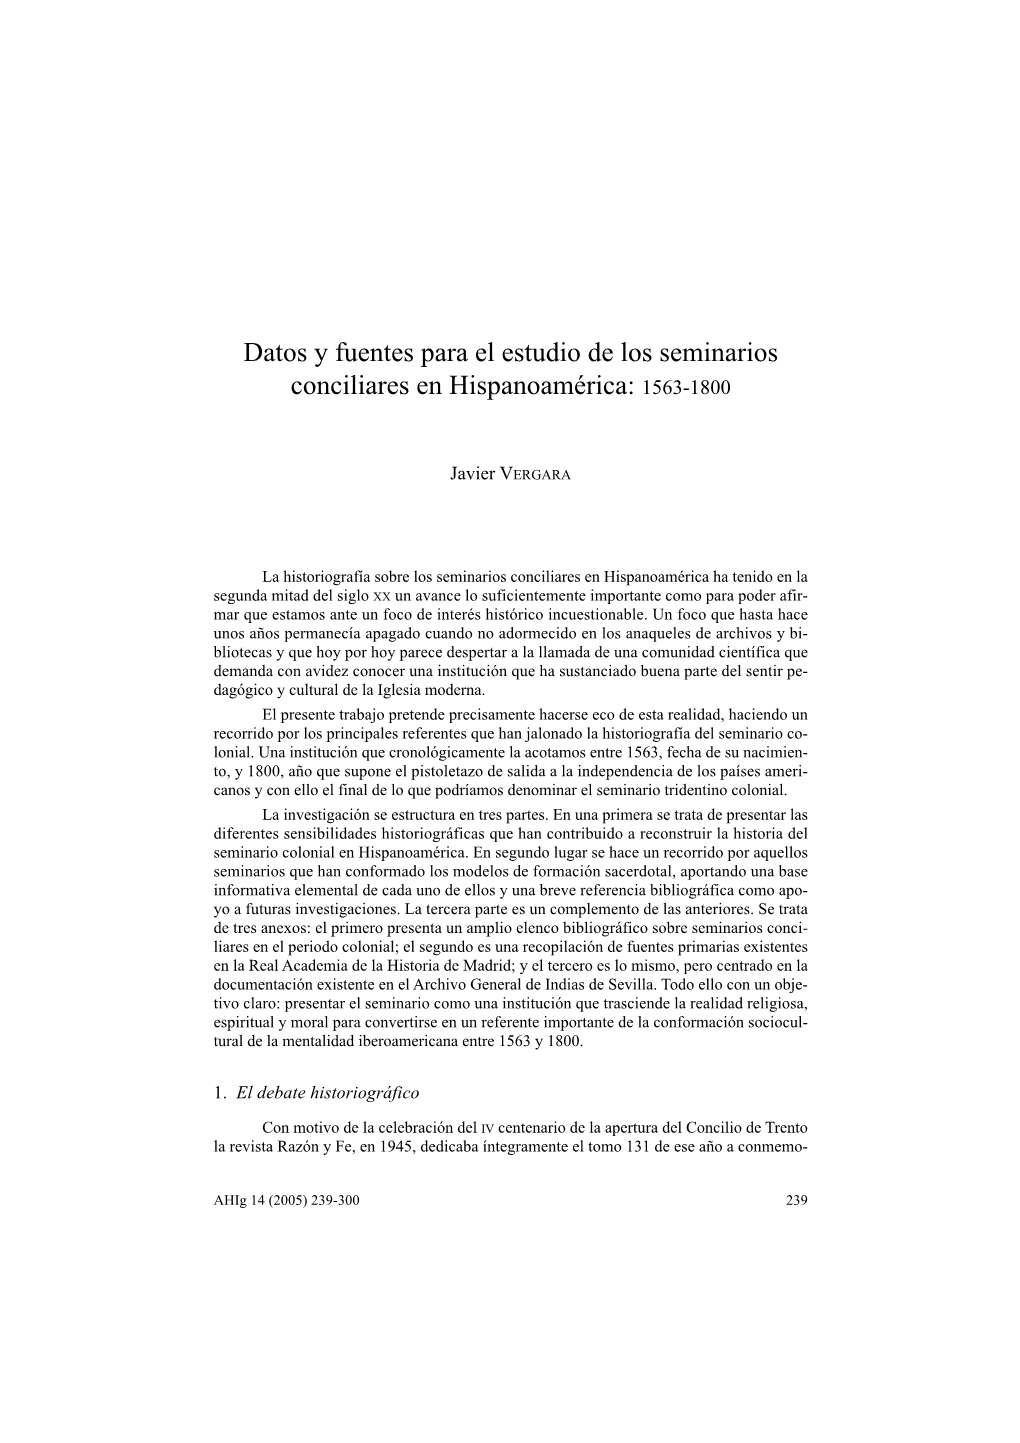 Datos Y Fuentes Para El Estudio De Los Seminarios Conciliares En Hispanoamérica: 1563-1800